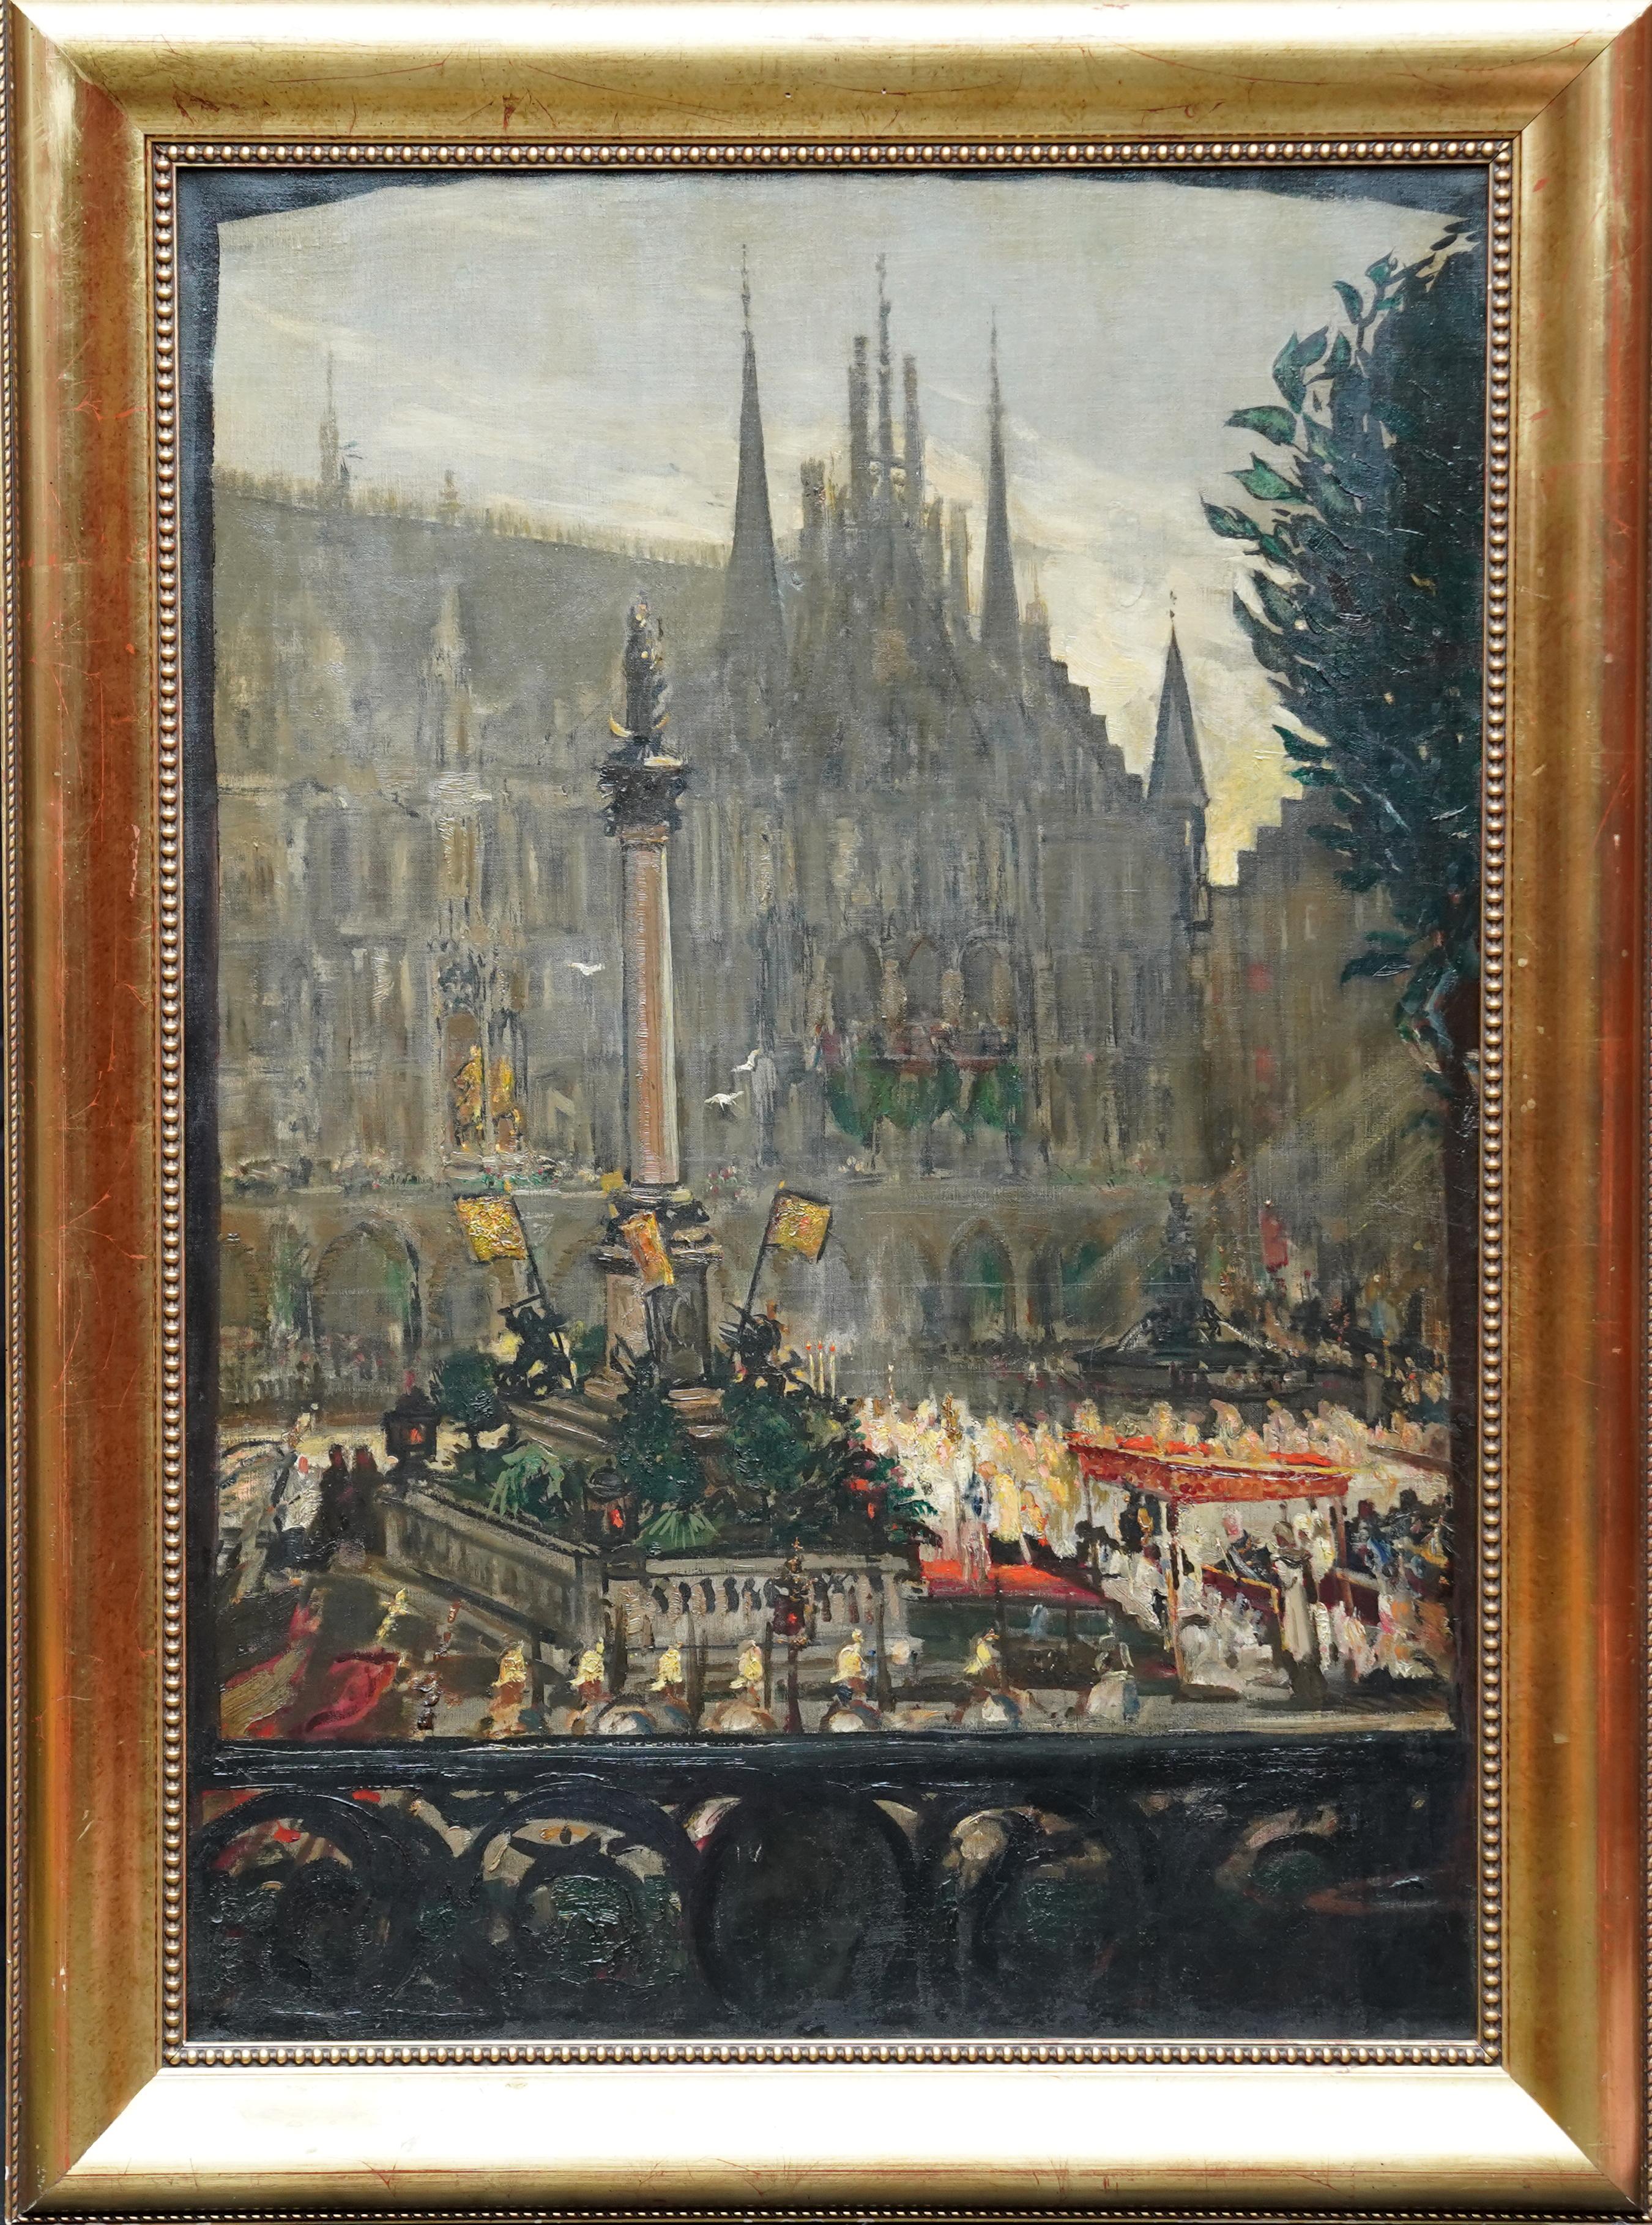 Jacques Emile Blanche Landscape Painting - Celebrations at Marienplatz, Munich French 1900 art city landscape oil painting